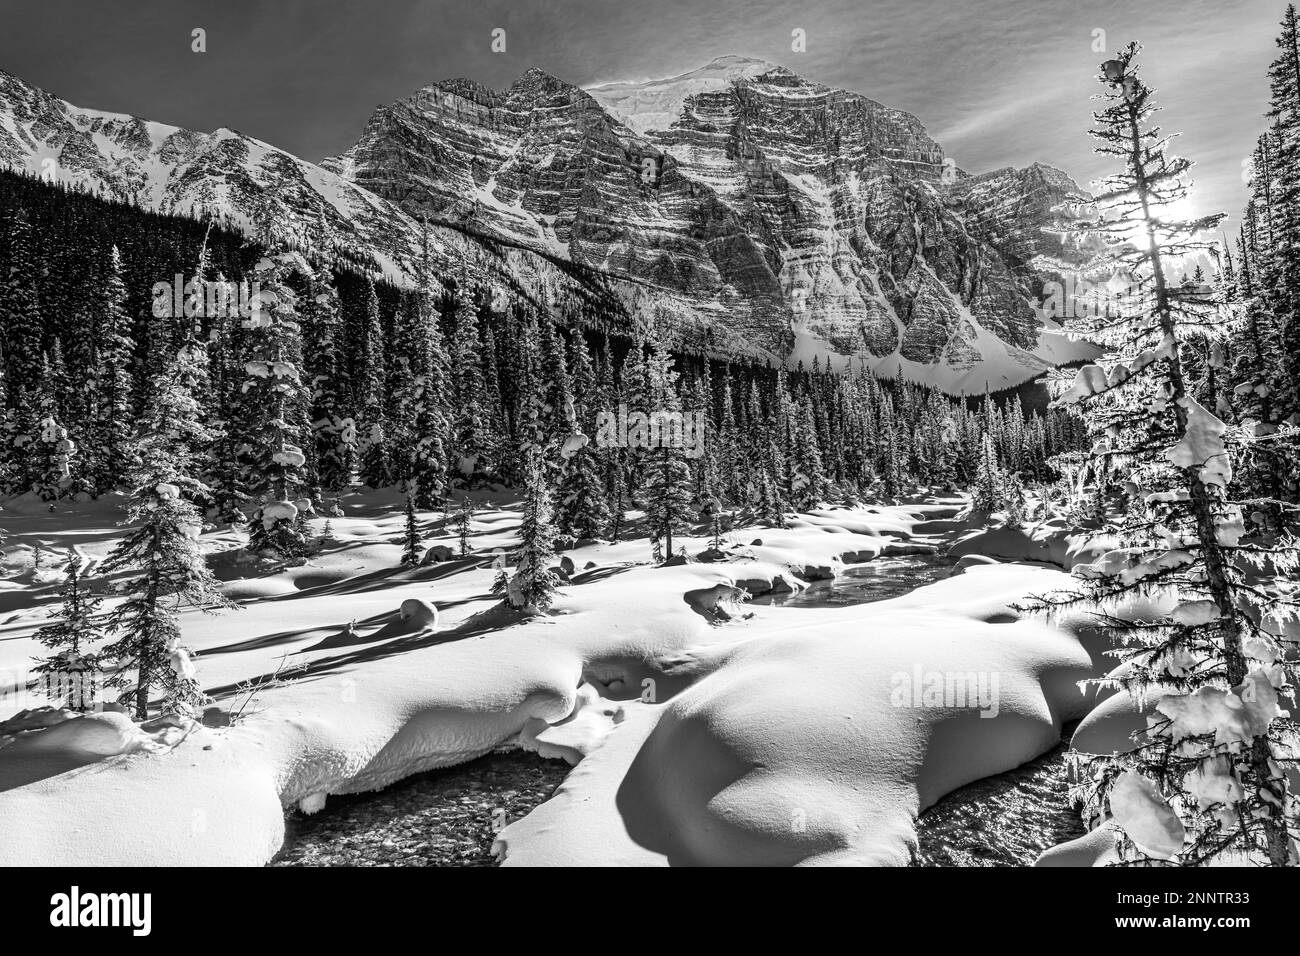 La neige couvrait Paradise Creek et Mount Temple en noir et blanc, Lake Louise, Alberta, Canada Banque D'Images